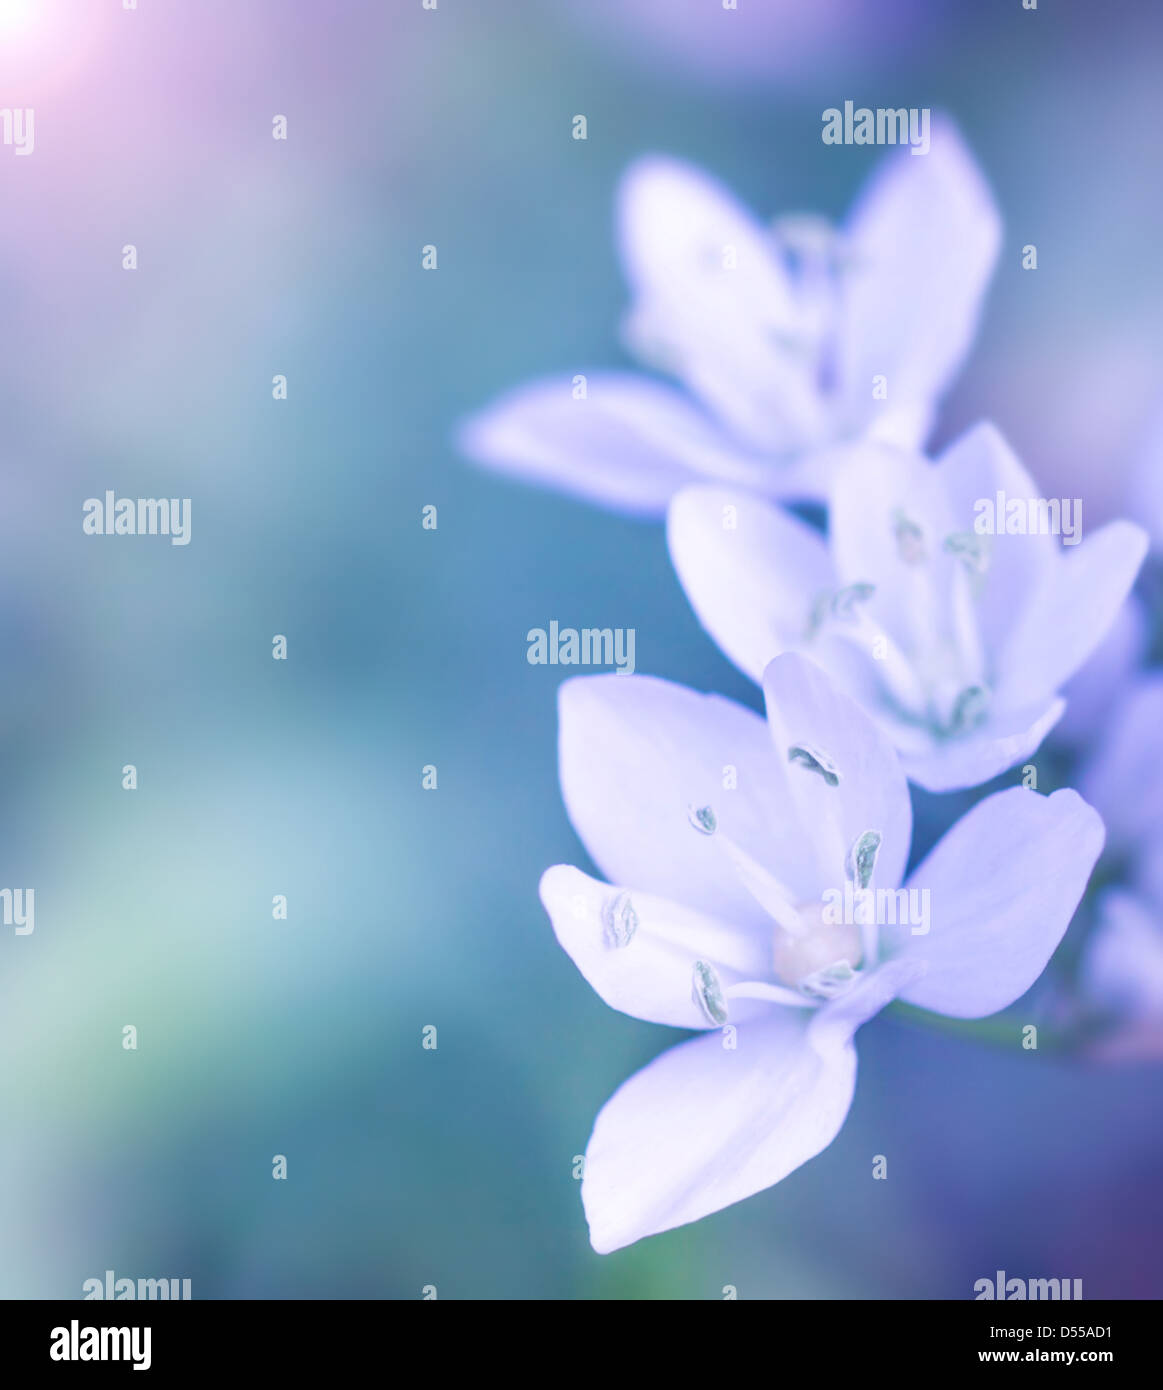 Sanfte weiße Blumen auf blau zu verwischen, Hintergrund, frische Wildblumenwiese im Freien, floral Grenzfluss, soft-Fokus Stockfoto